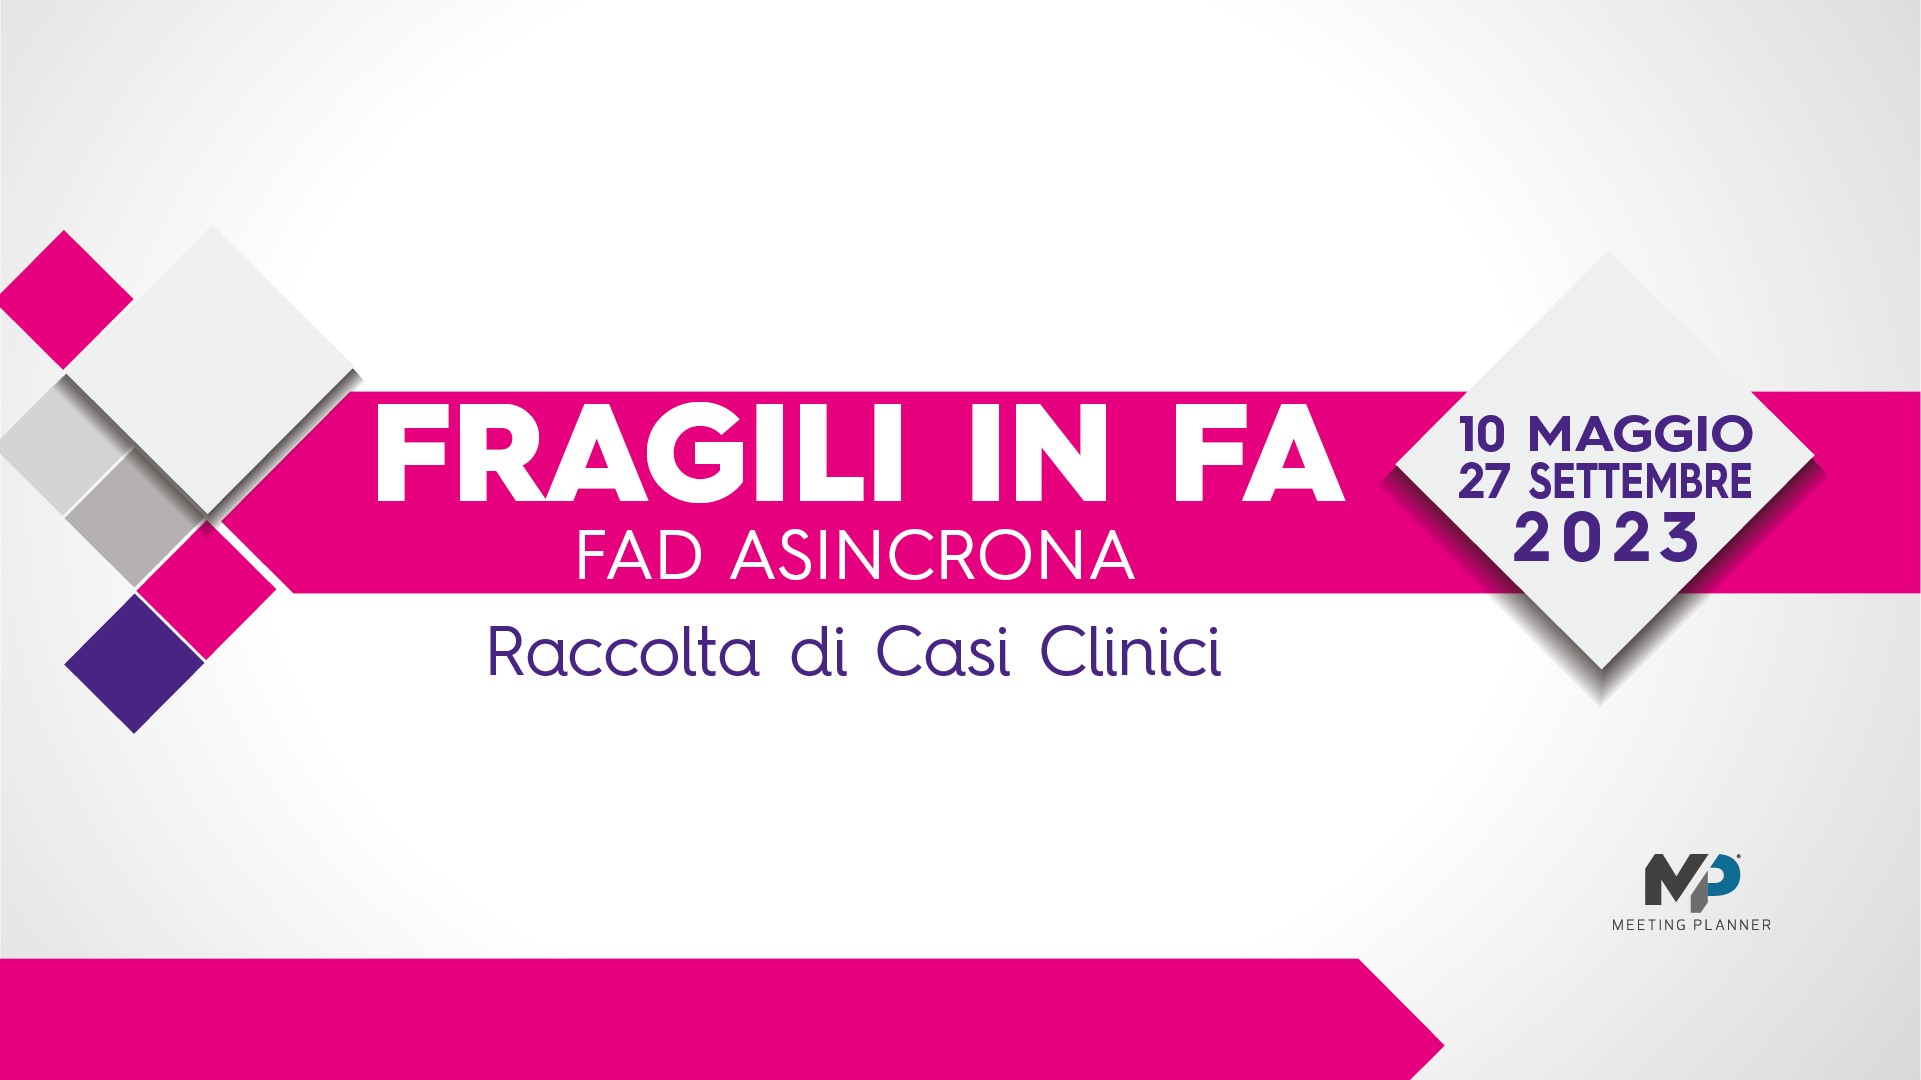 Course Image FRAGILI IN FA - Raccolta di Casi Clinici